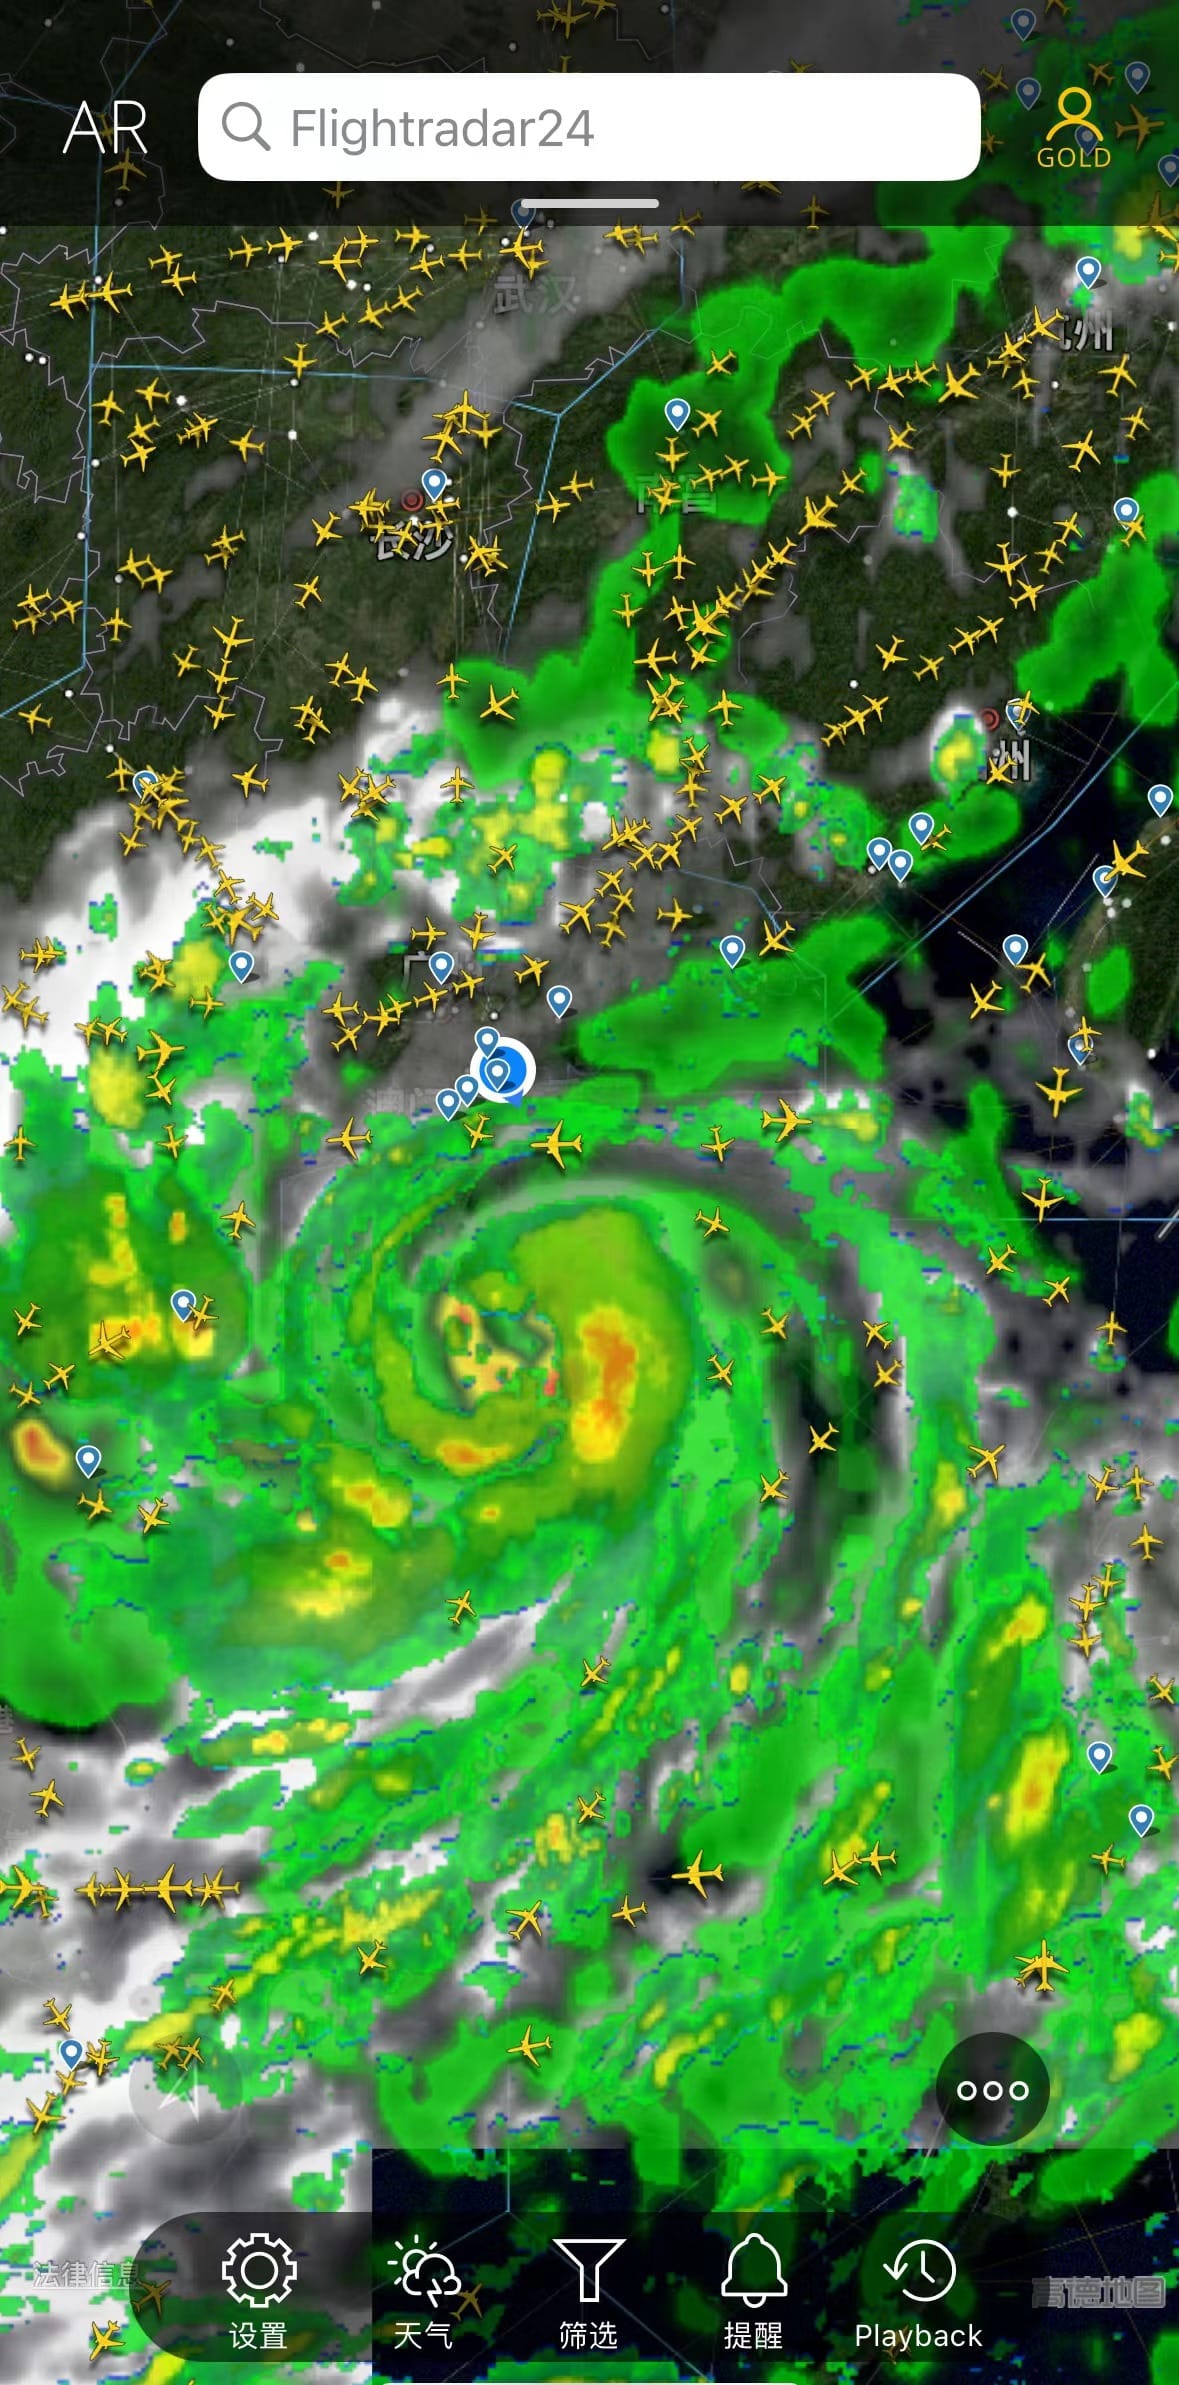 在「「Flightradar24」」看看是谁在台风边上玩耍